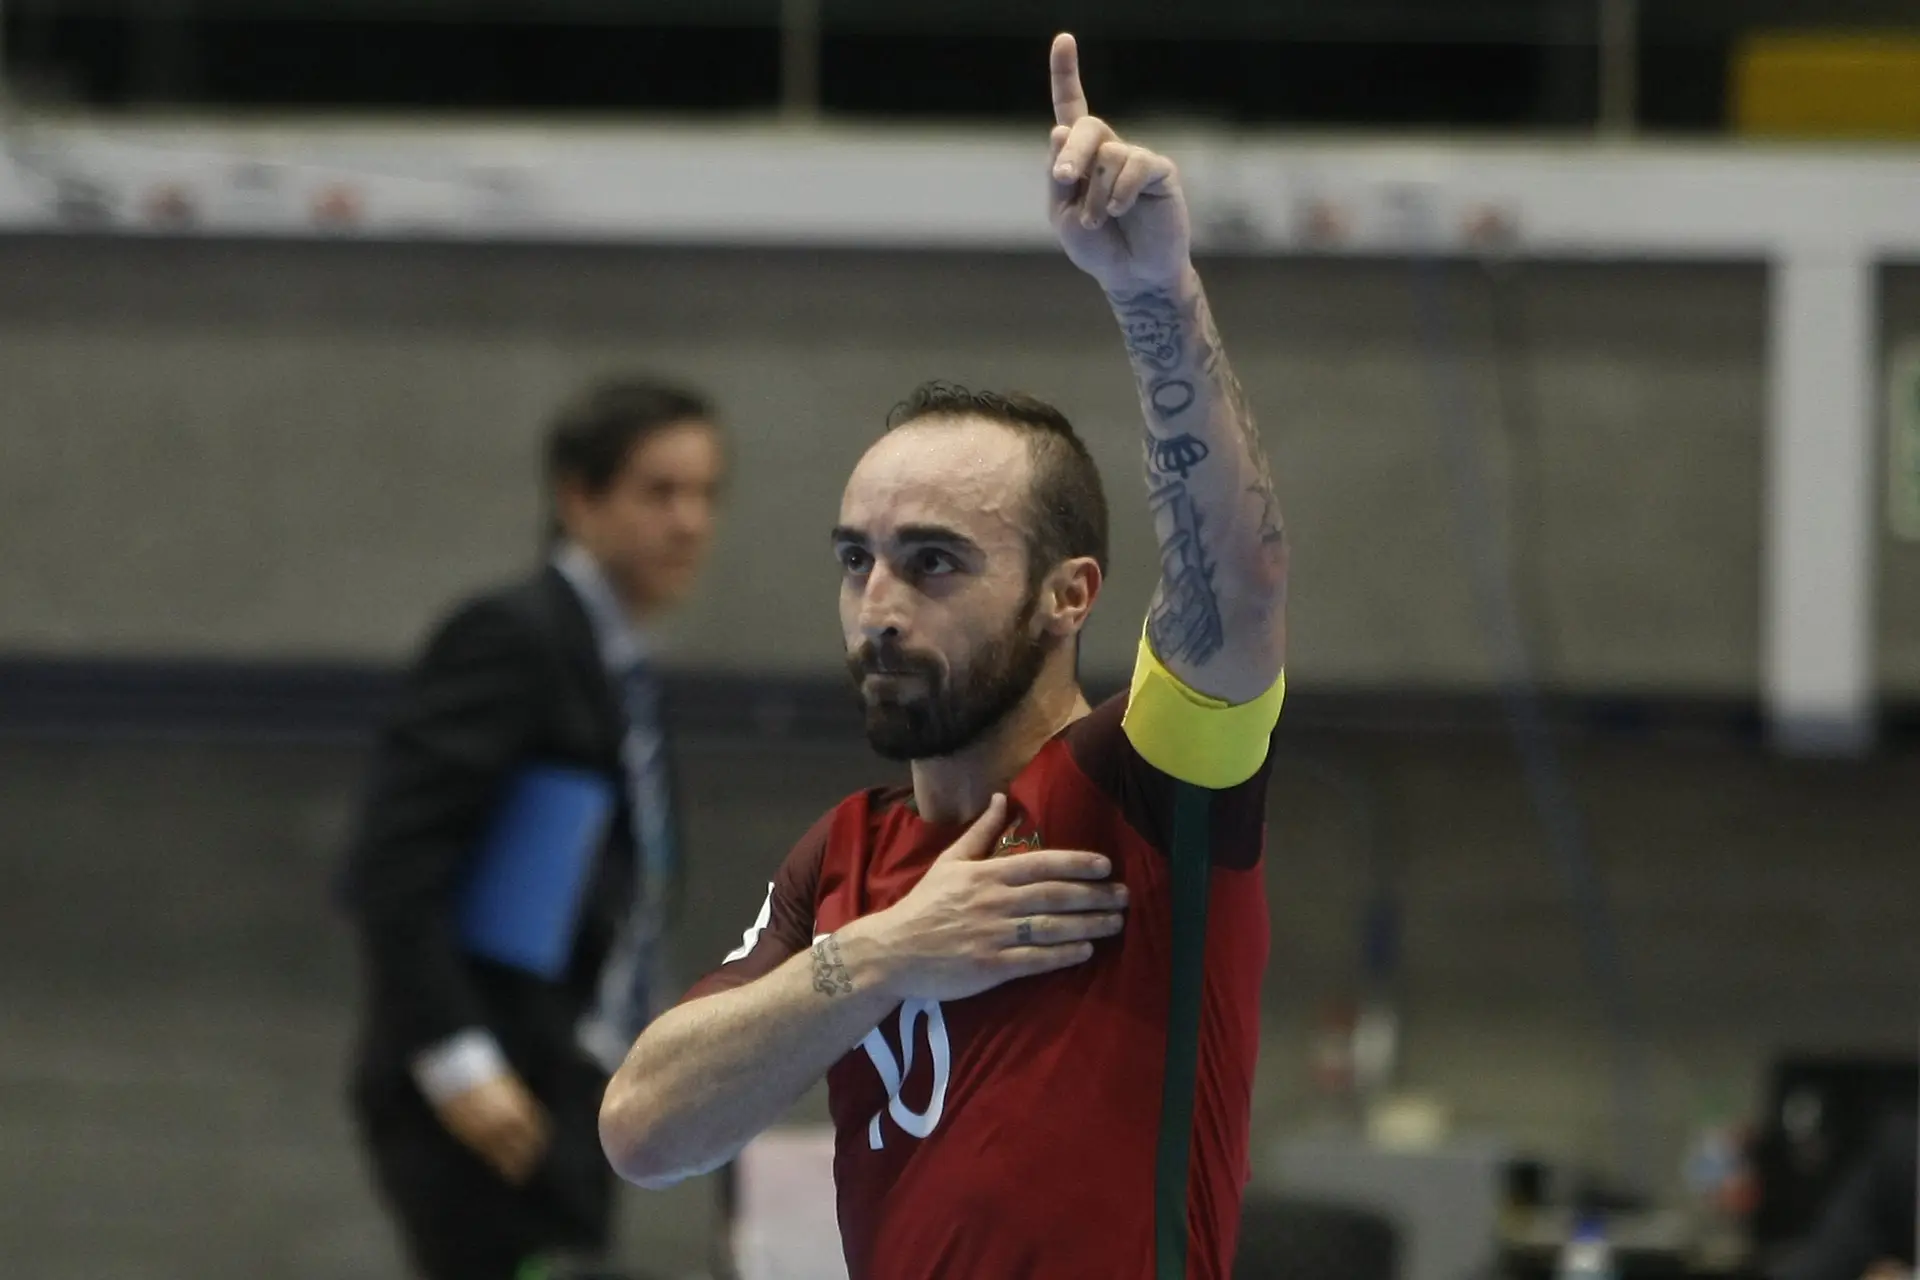 Ricardinho melhor jogador de Futsal do Mundo - Desporto - SÁBADO